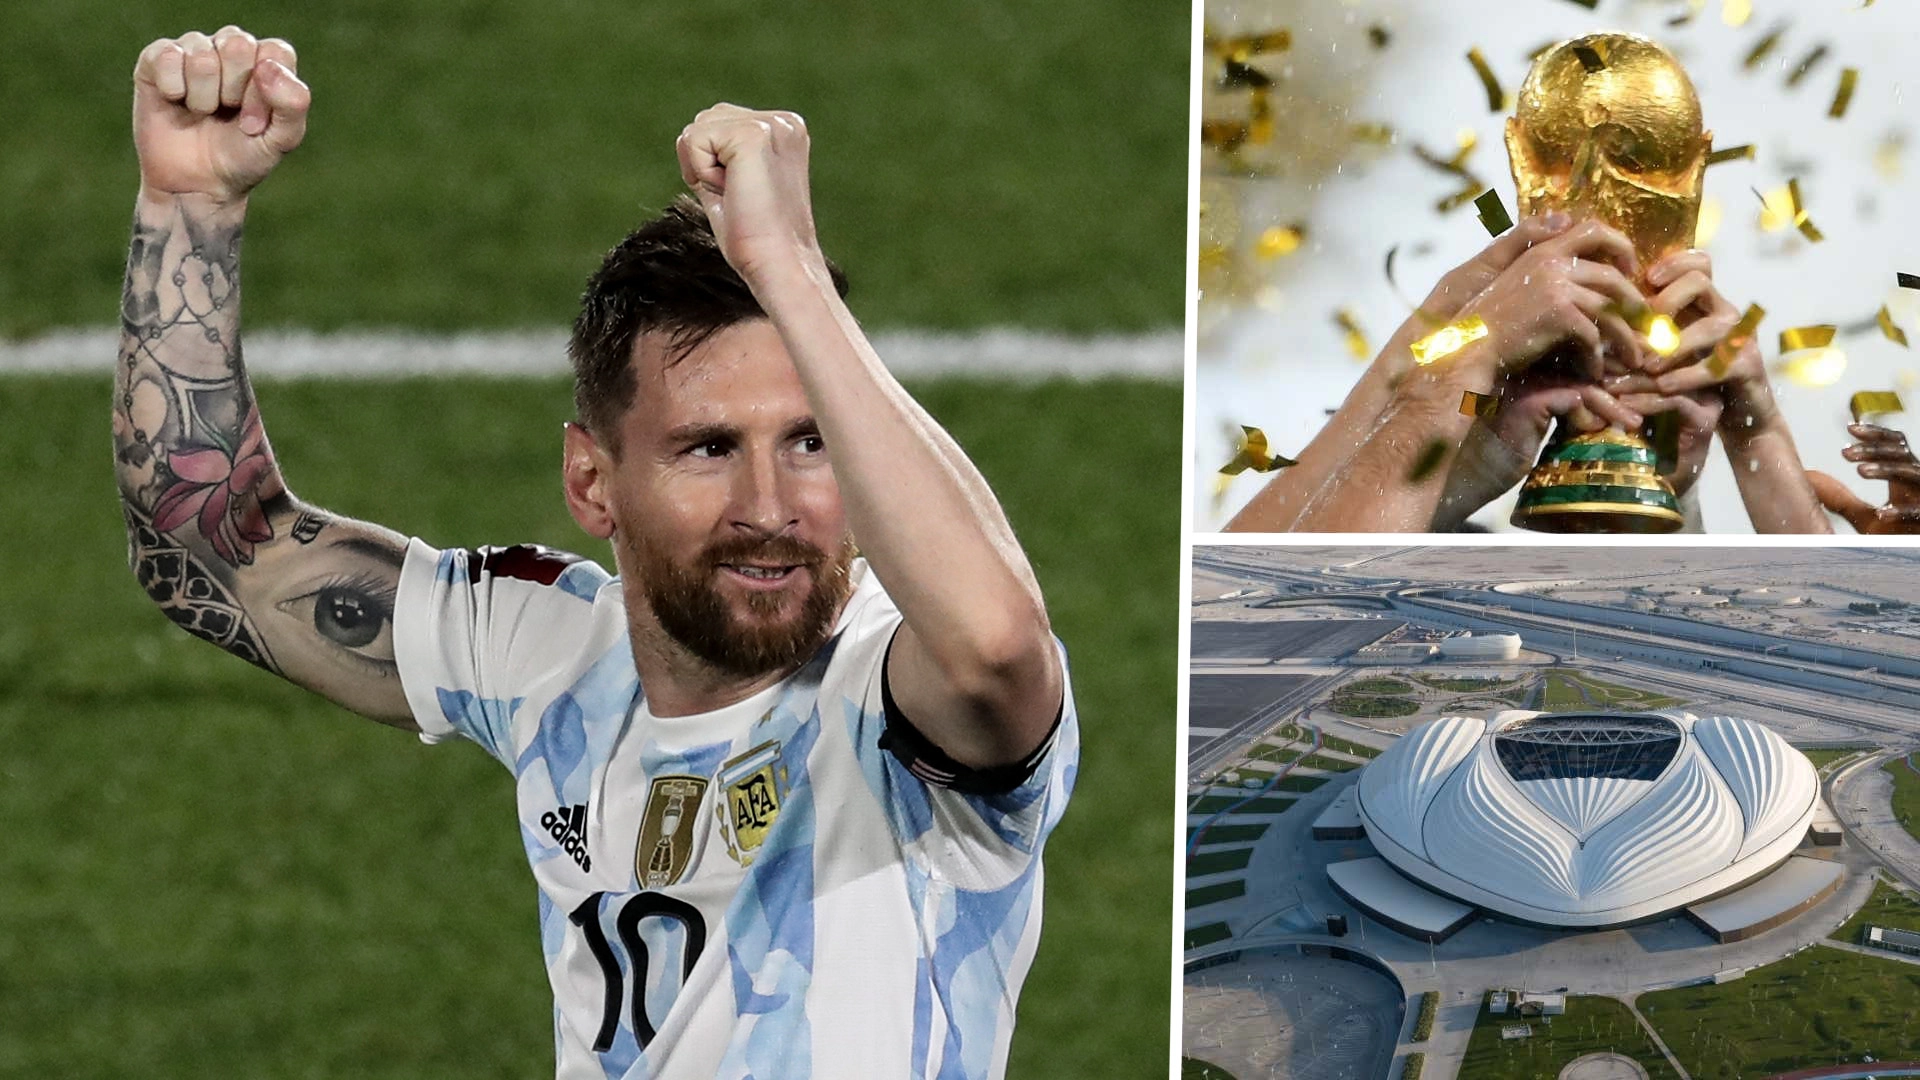 Hành trình chinh phục cúp vàng sắp kết thúc với Messi 